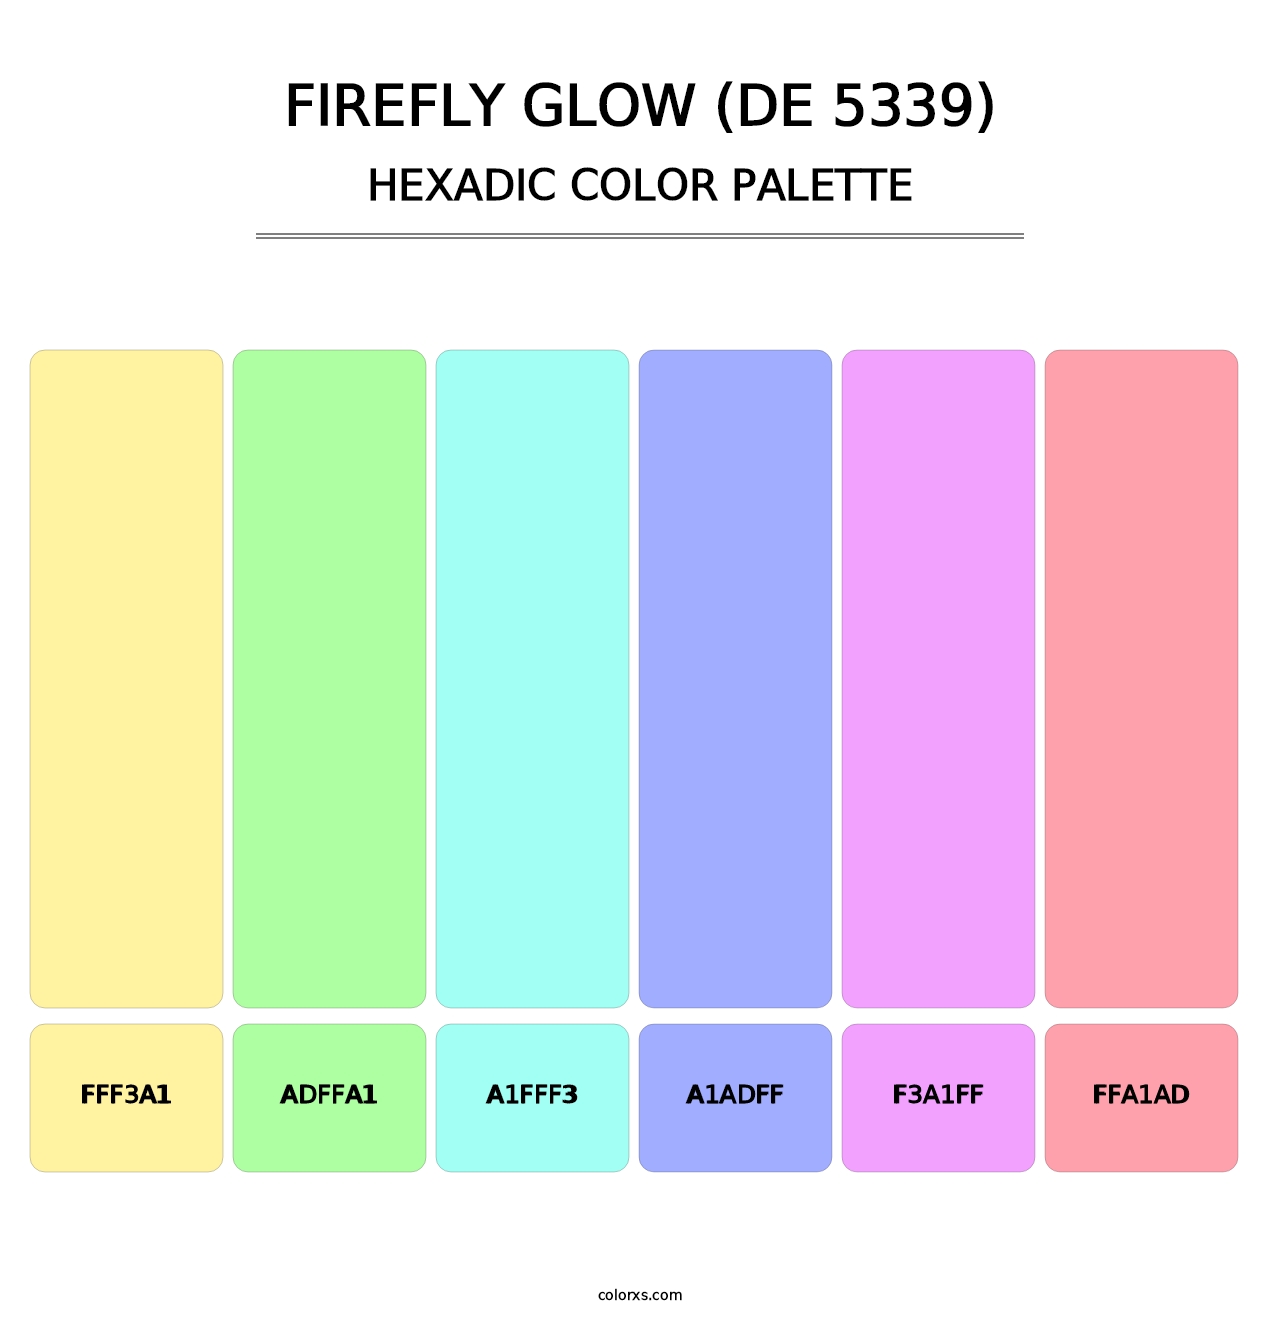 Firefly Glow (DE 5339) - Hexadic Color Palette